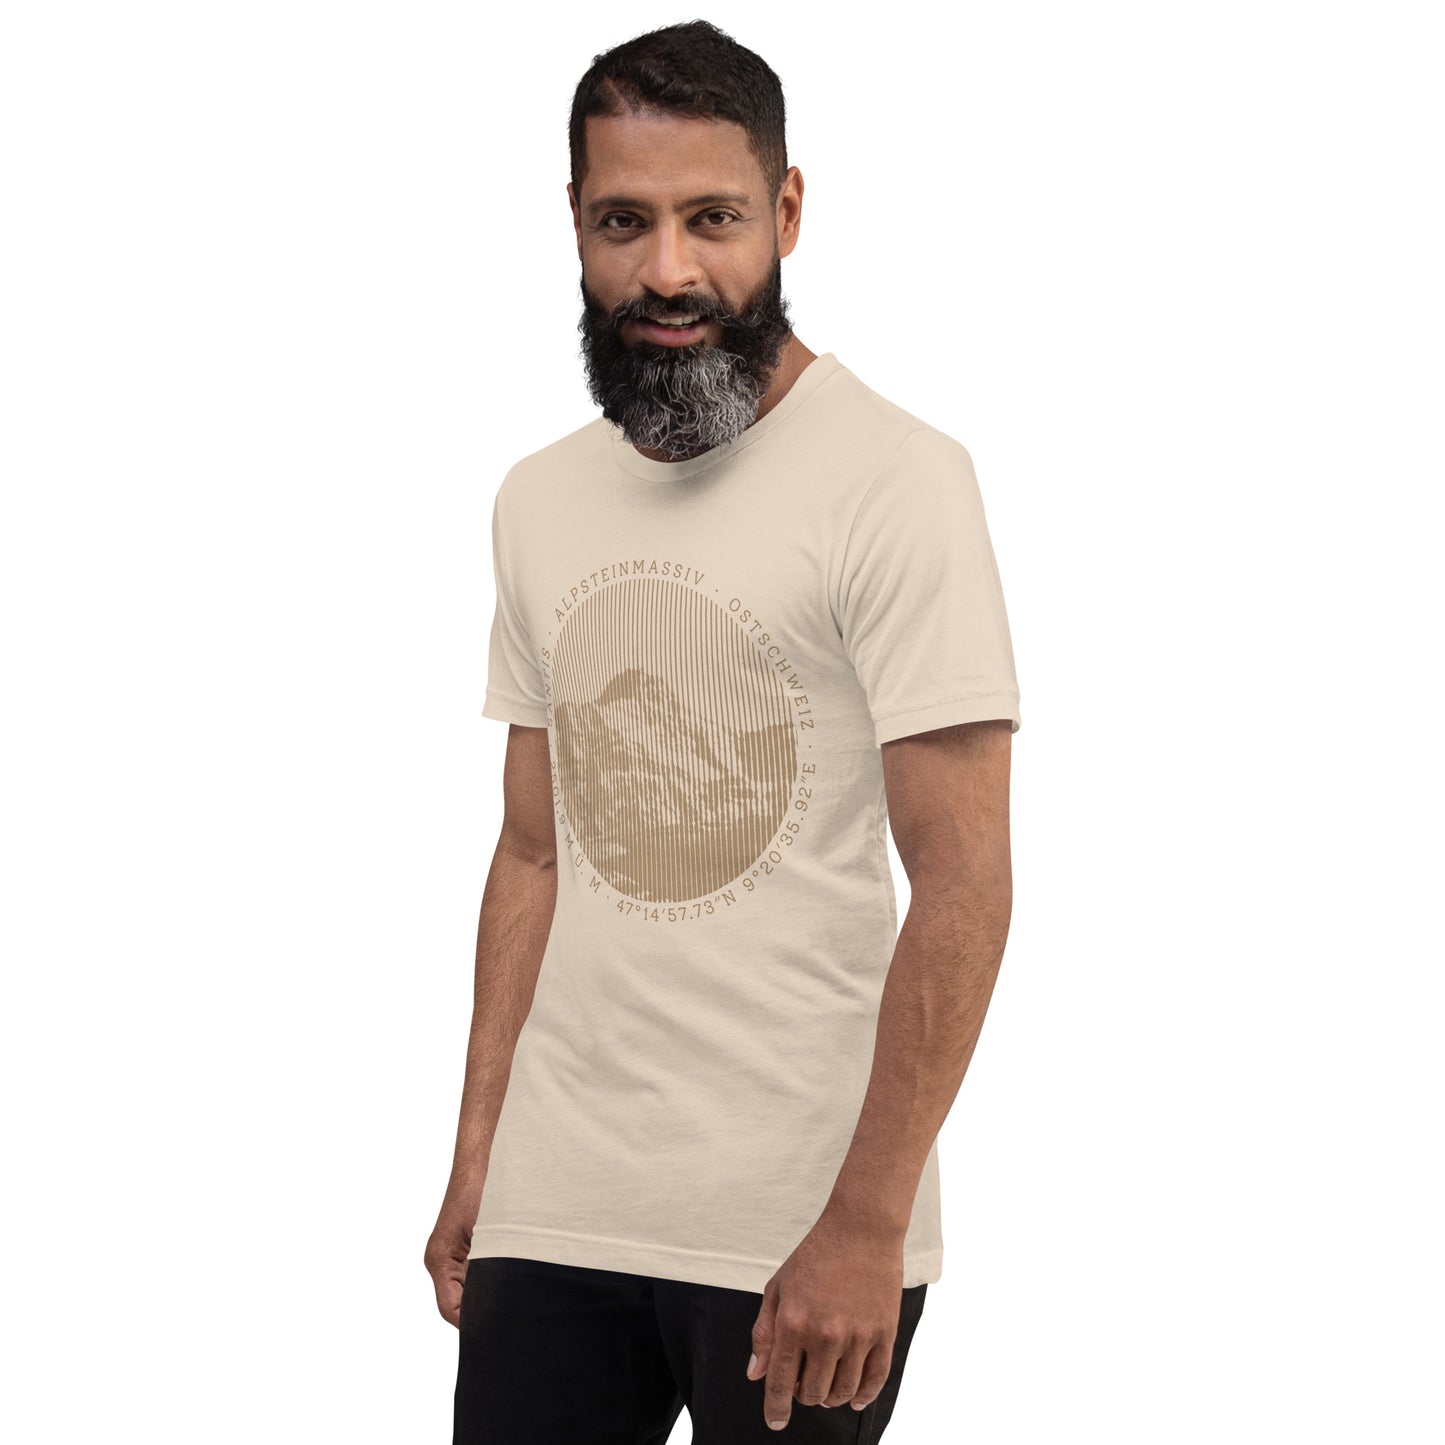 Bärtiger Herr mit crèmefarbenem T-Shirt mit Säntis